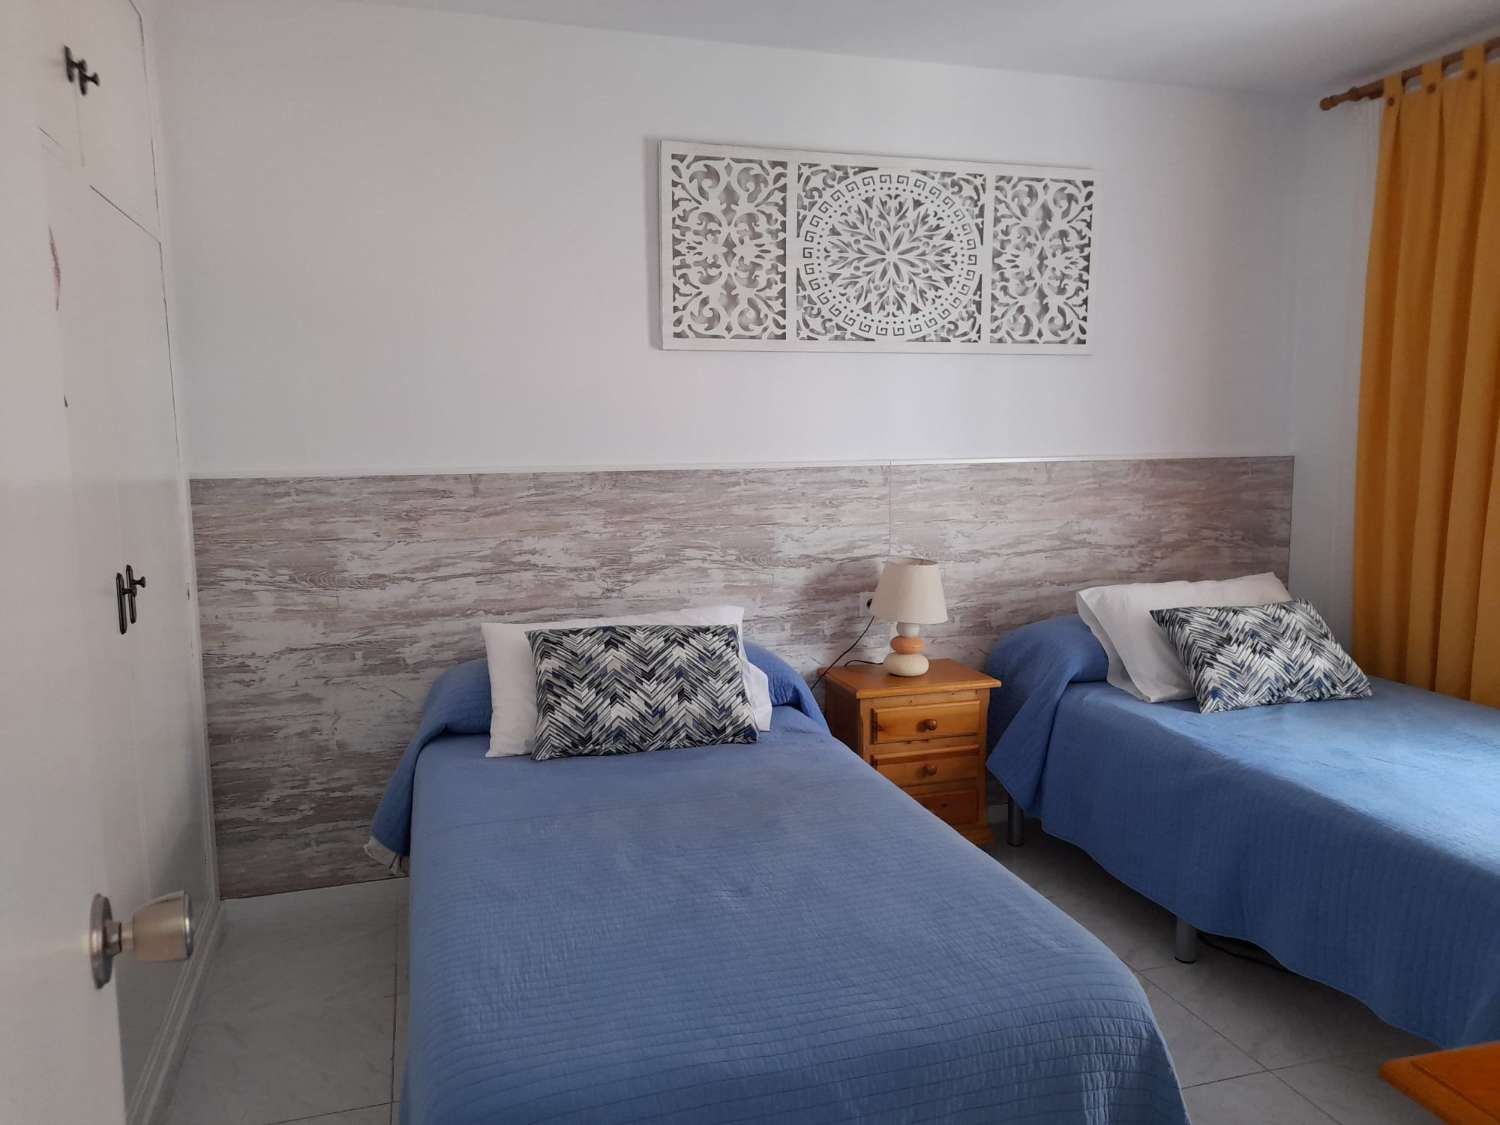 Te huur MIDDENSEIZOEN van 01/09/2023 tot 30/06/2024 Mooi appartement met zijdelings uitzicht op zee op de 2e lijn van het strand in Fuengirola